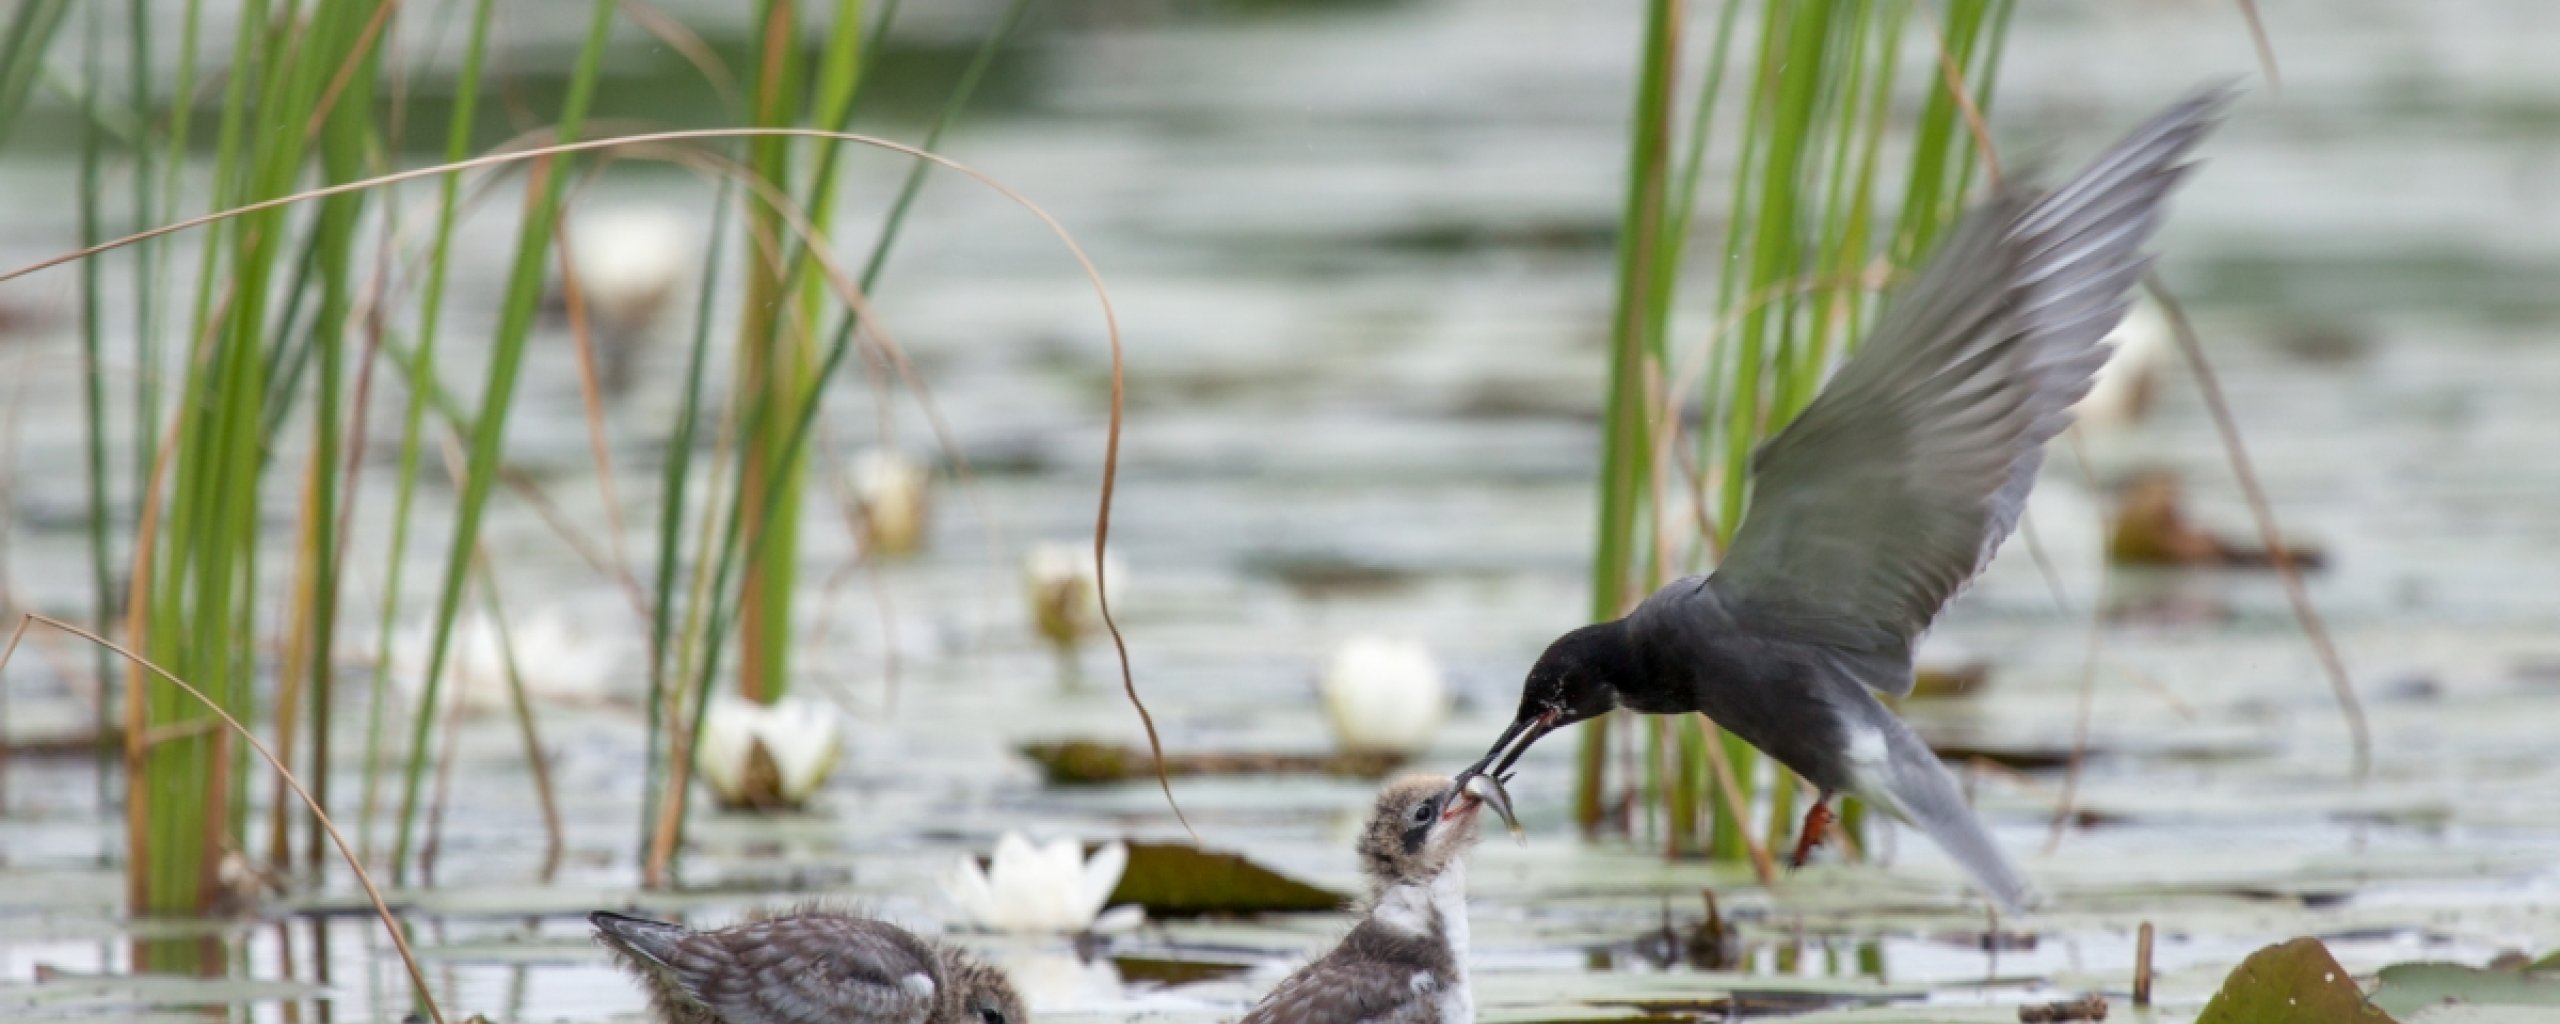 Vogel zwarte stern geeft zijn jong te eten in het water tussen het gras.